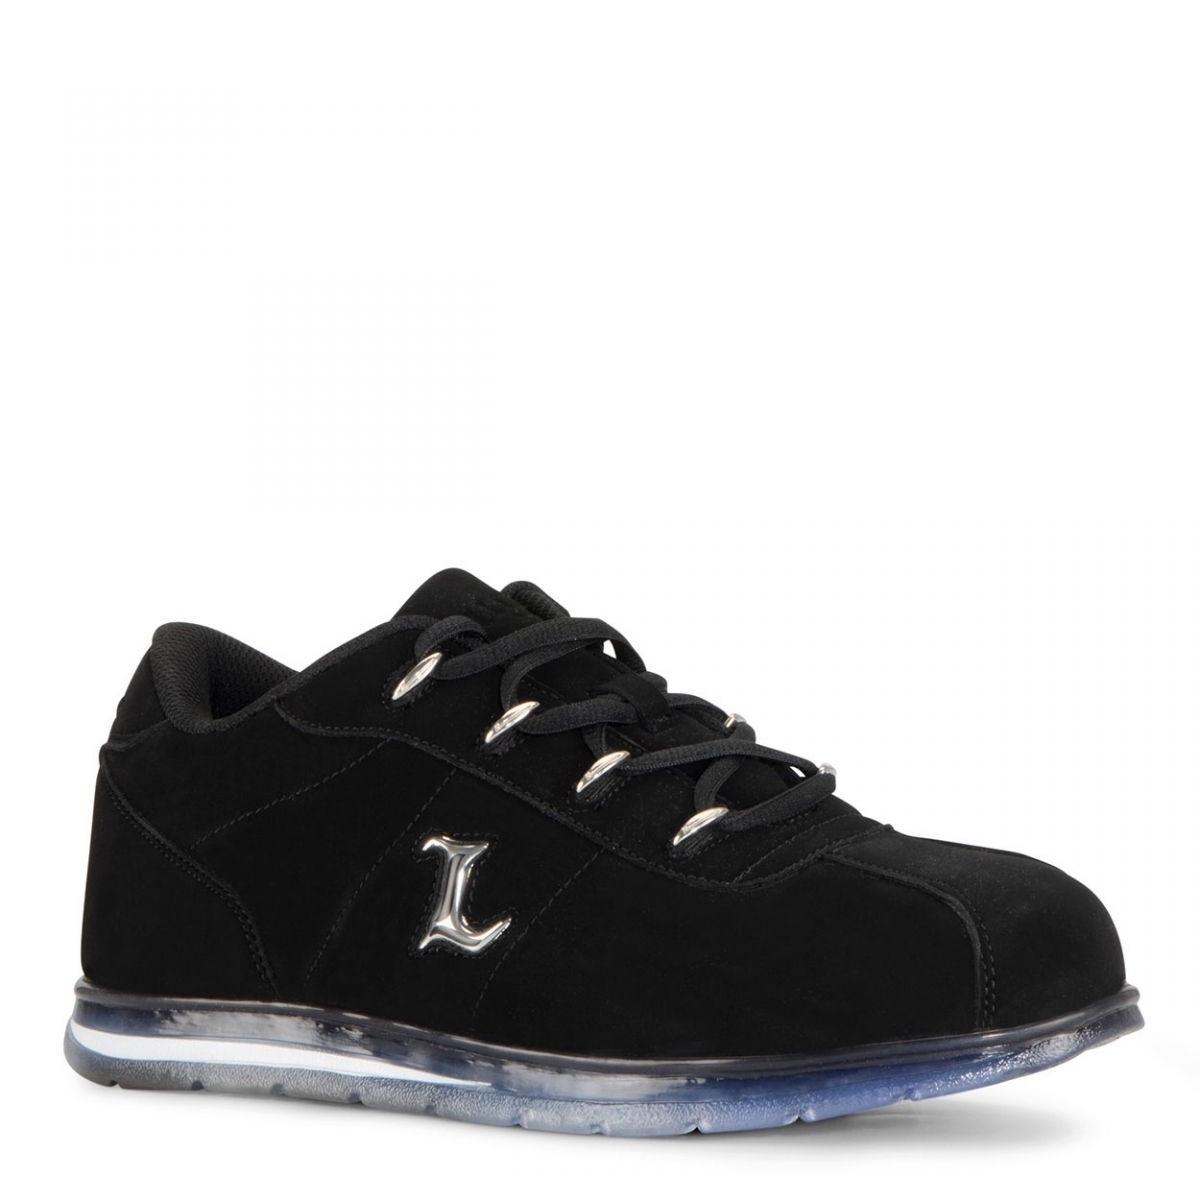 Lugz Men's Zrocs DX Sneaker Black/Clear - MZRCID-0048 BLACK/CLEAR - BLACK/CLEAR, 9